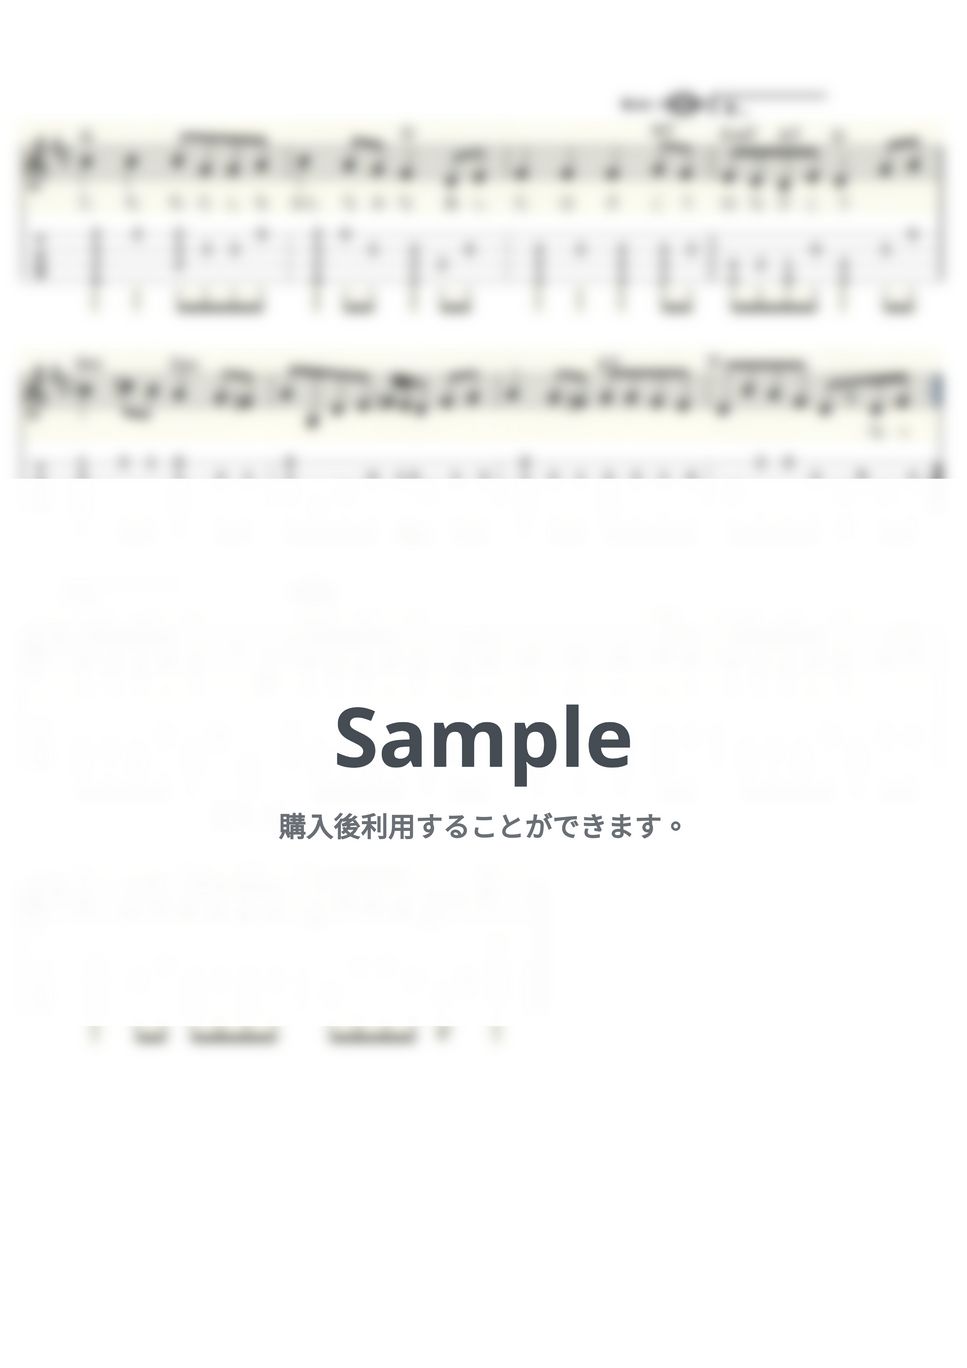 吉永小百合＆三田 明 - 明日は咲こう花咲こう (ｳｸﾚﾚｿﾛ/Low-G/初級～中級) by ukulelepapa